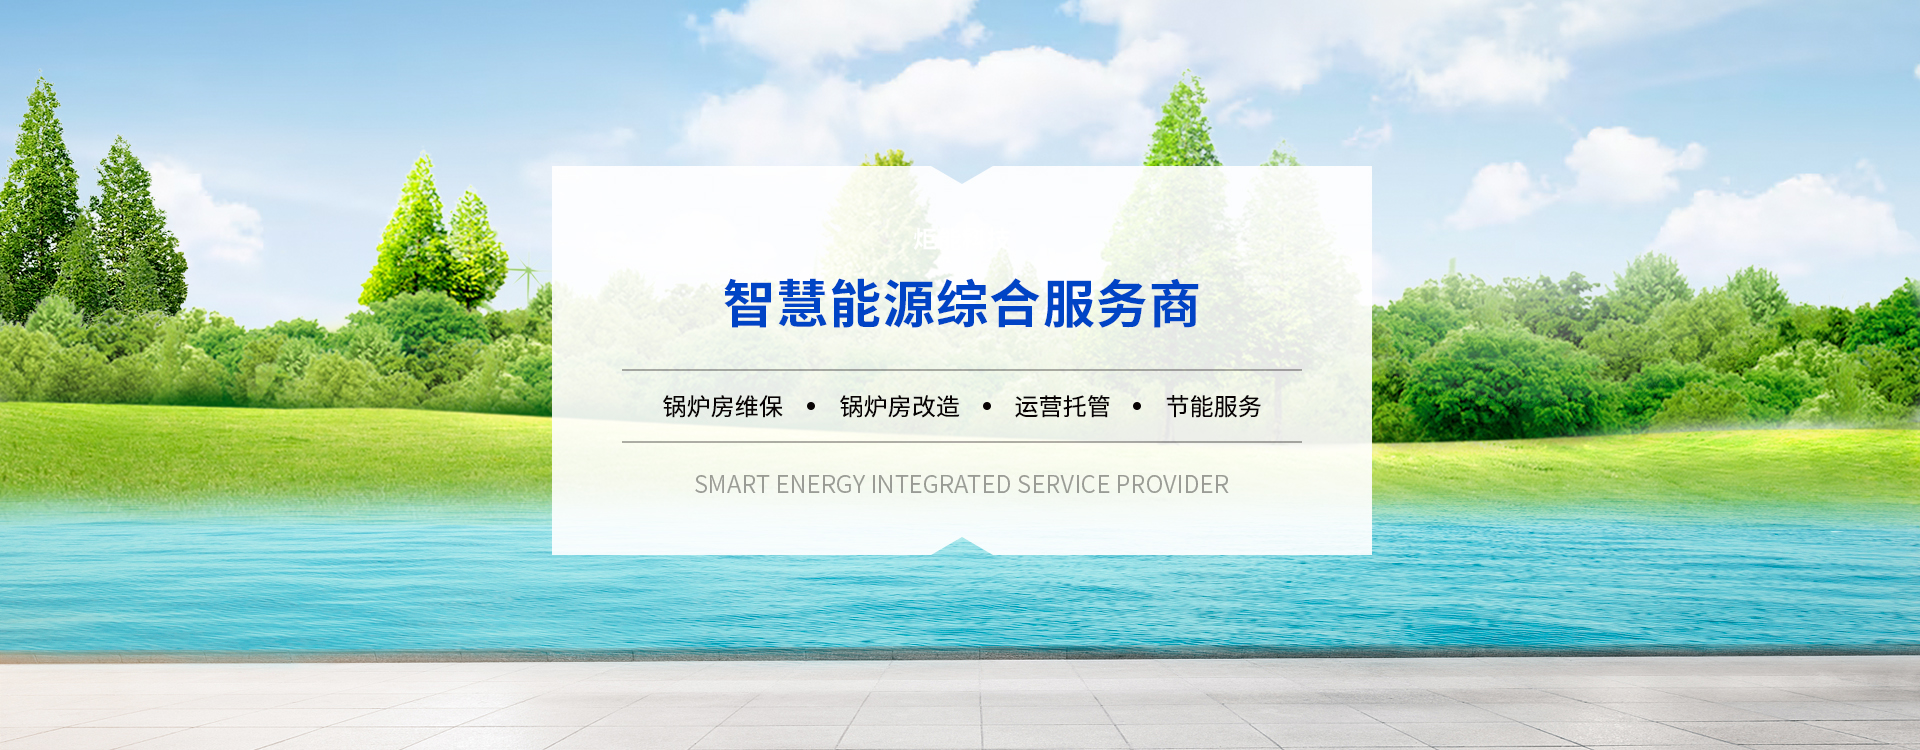 北京炬能能源科技有限公司